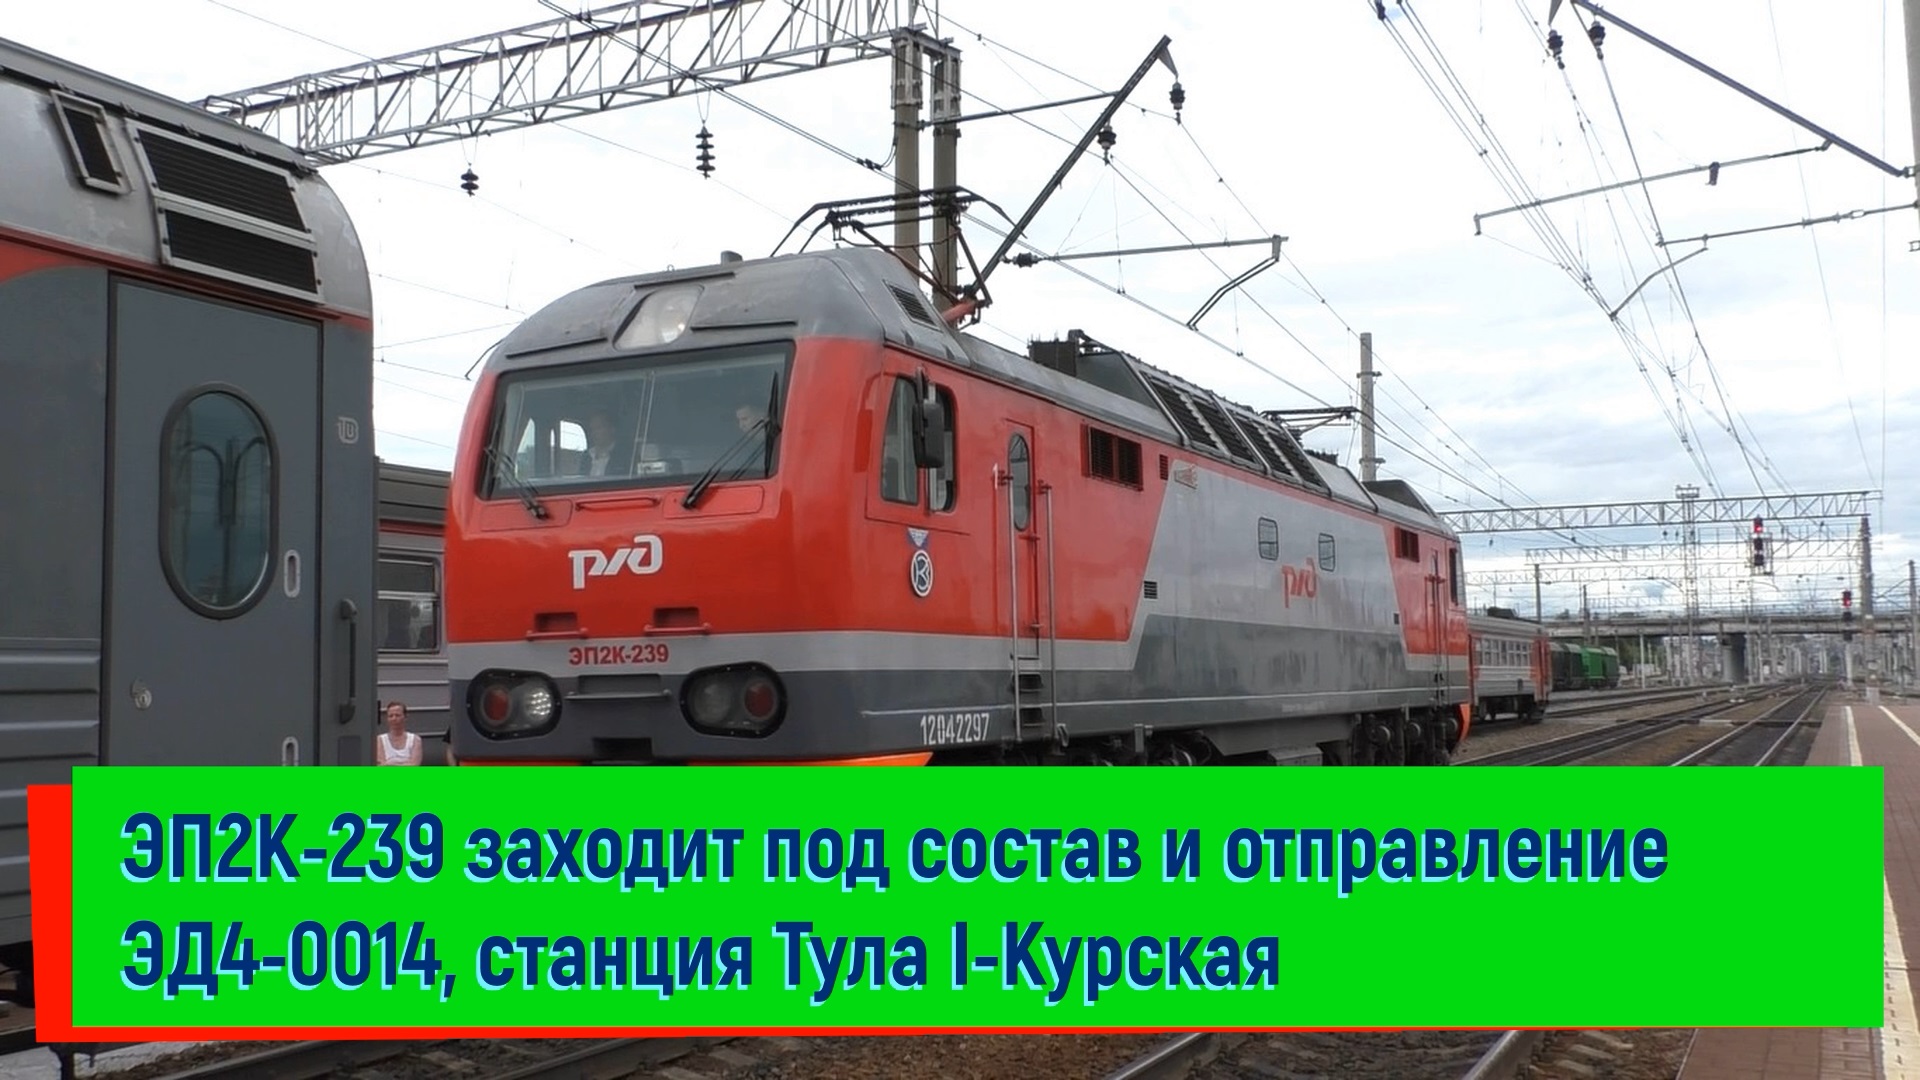 ЭП2К-239 заходит под состав поезда №480А Сухум – Санкт-Петербург и отправление ЭД4-0014